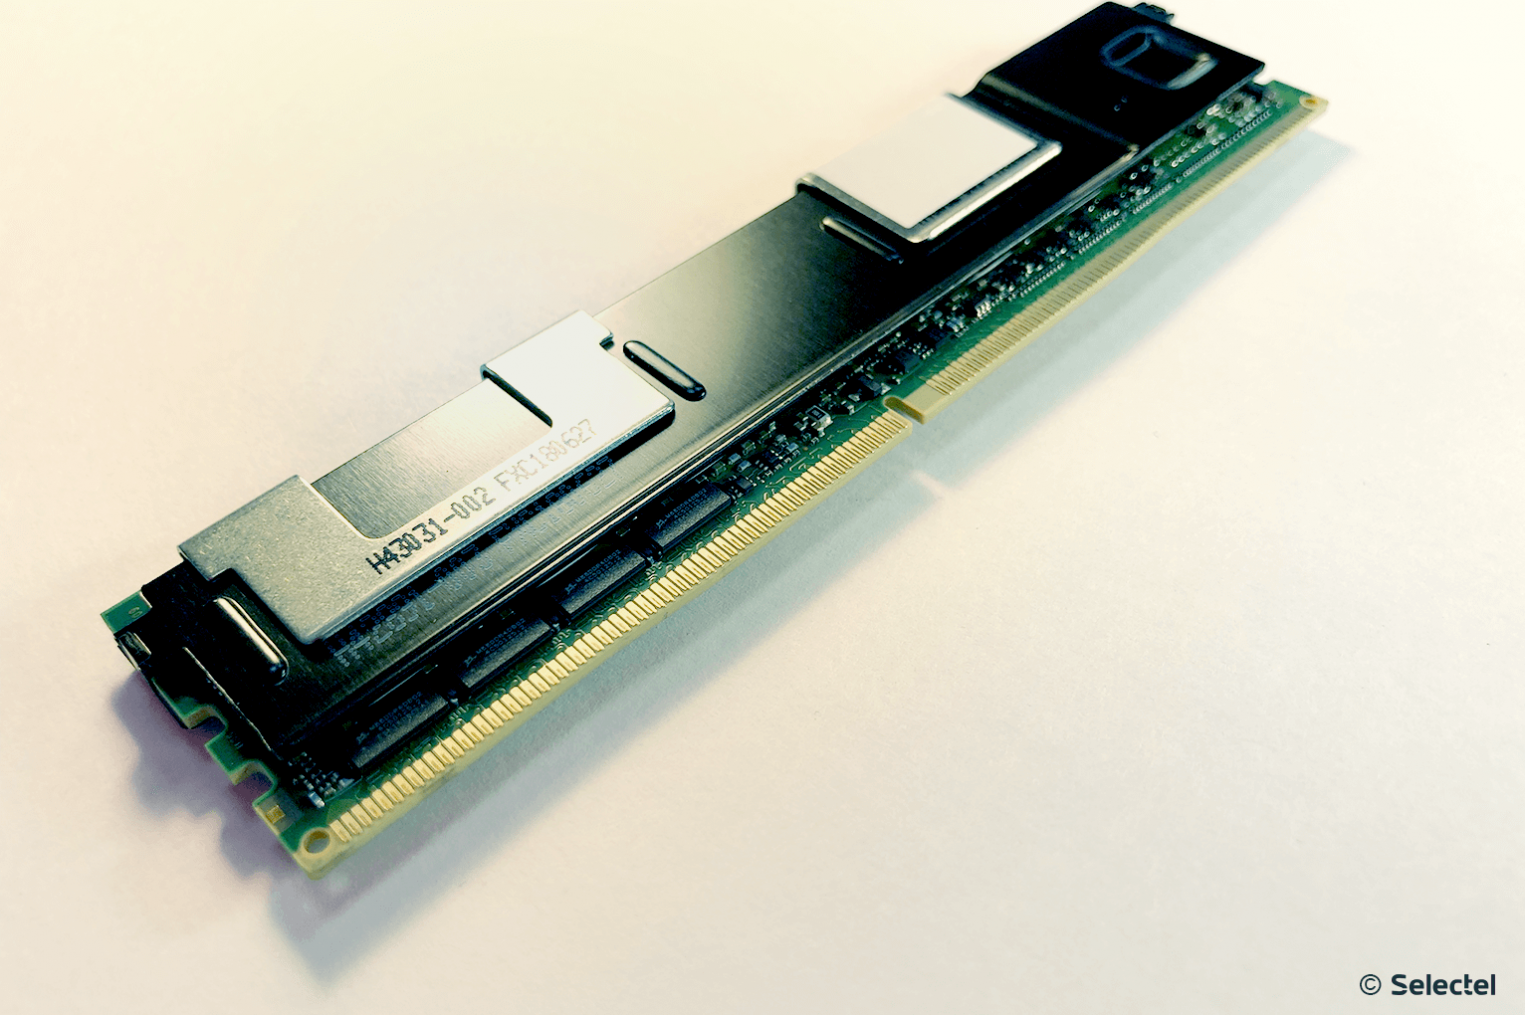 Intel поддержка памяти